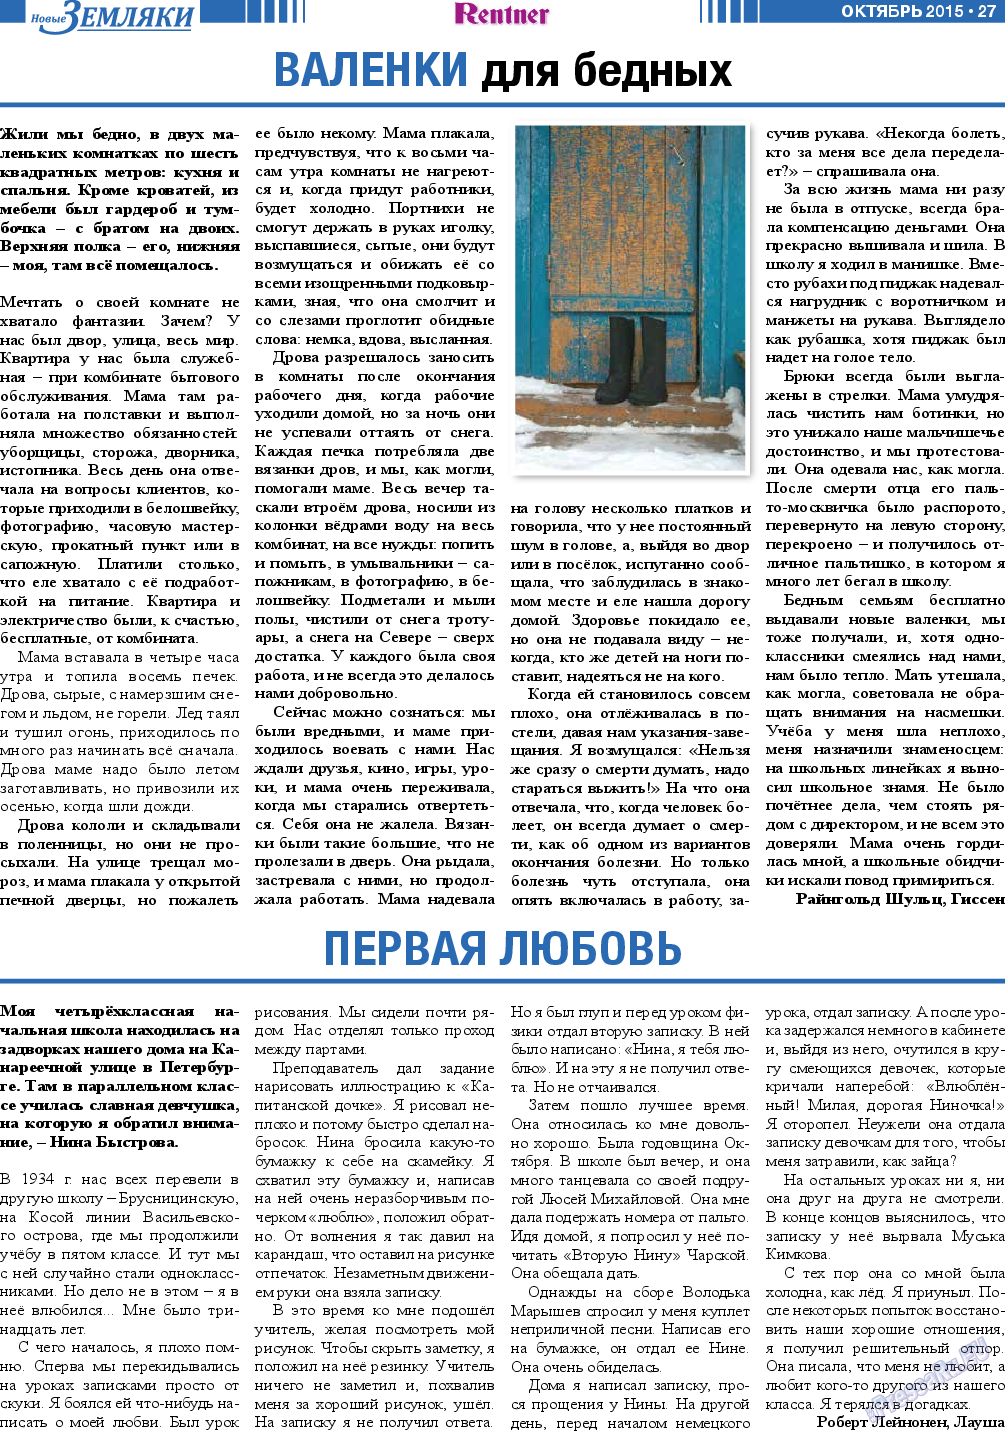 Новые Земляки, газета. 2015 №10 стр.27